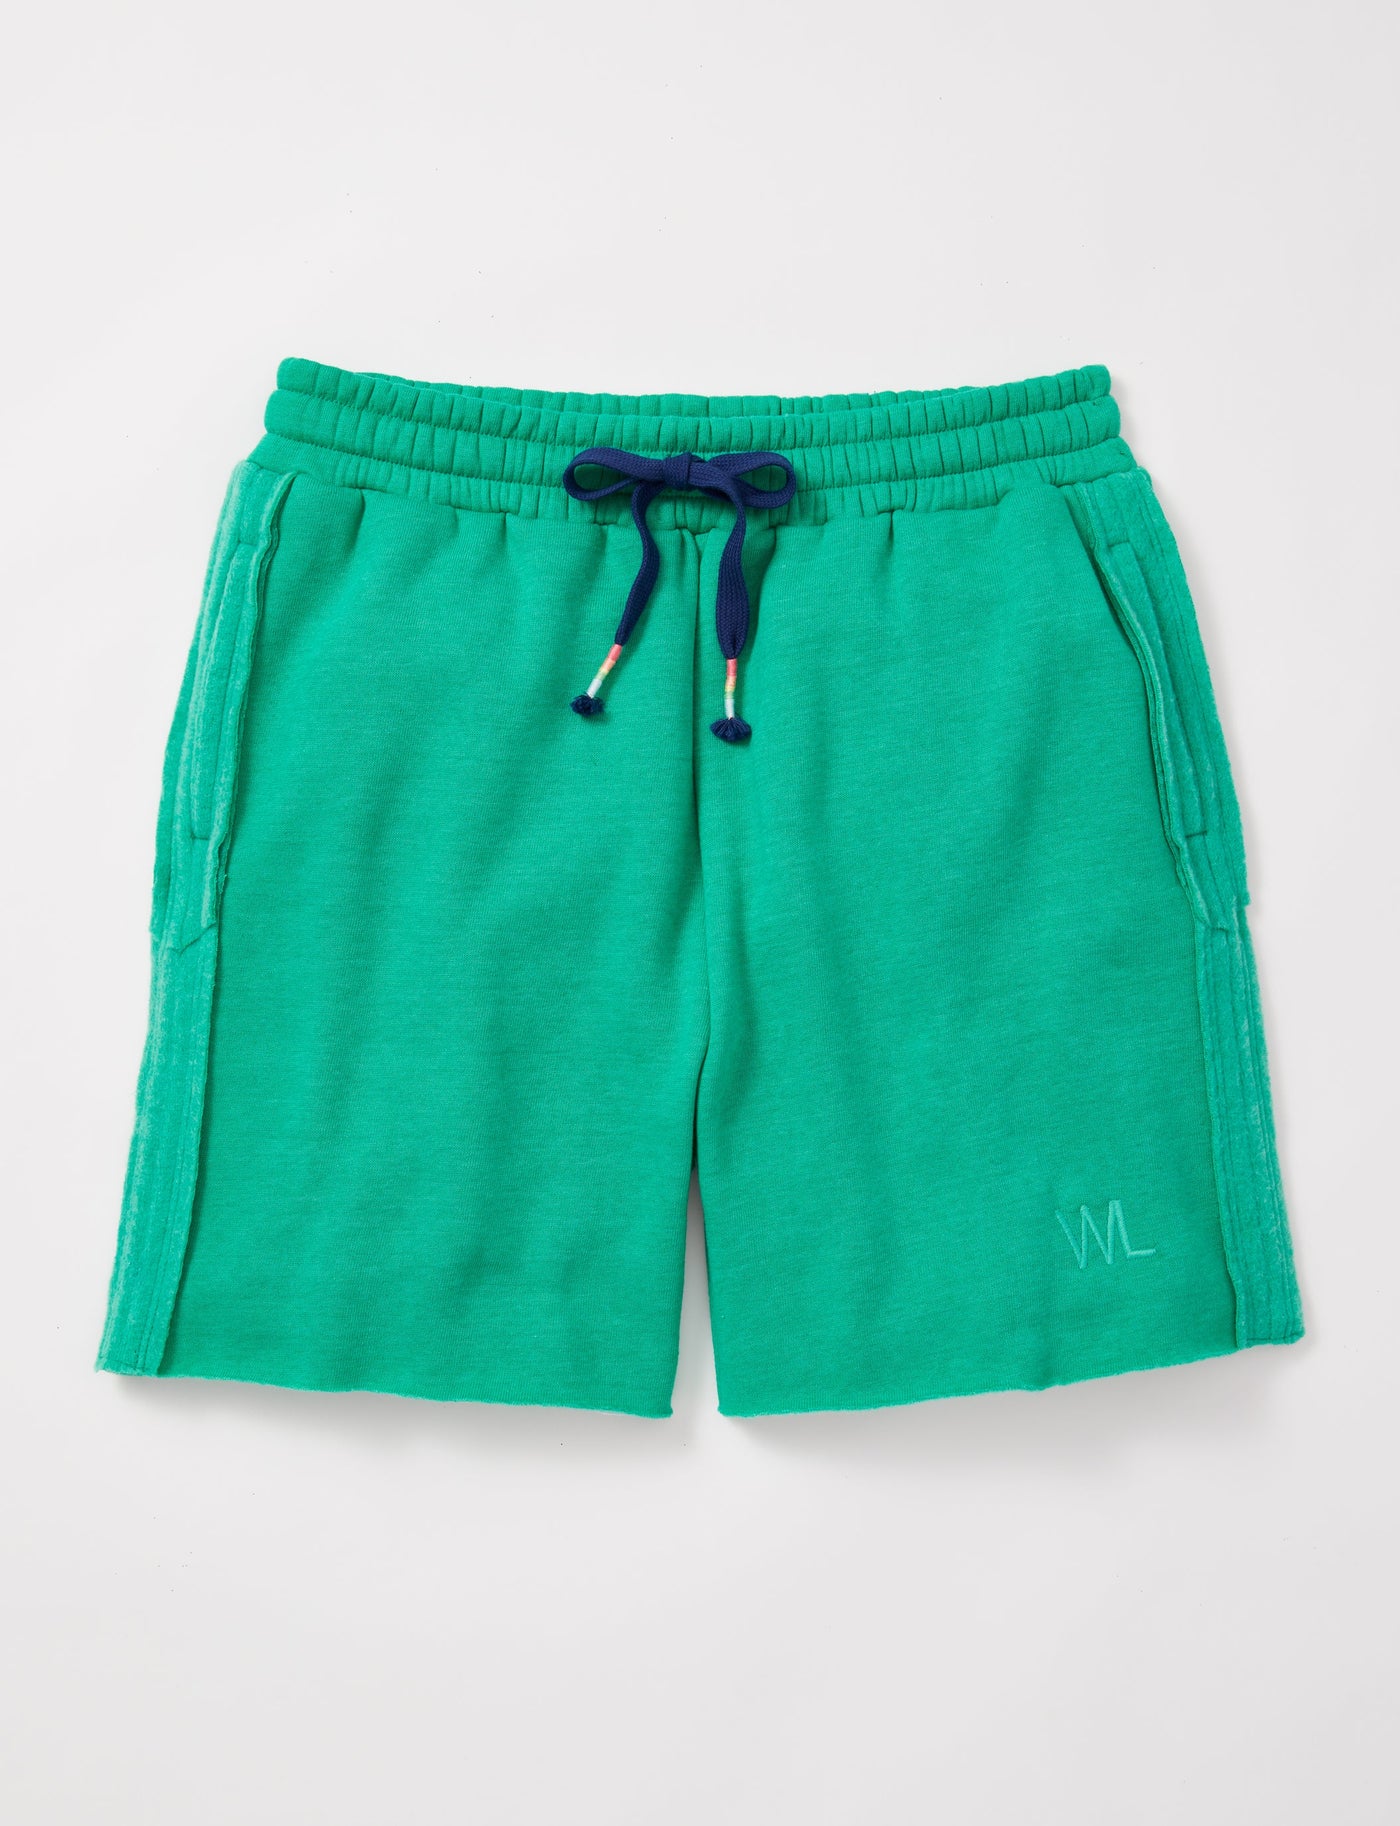 Unisex Sweat Shorts by Woodley + Lowe